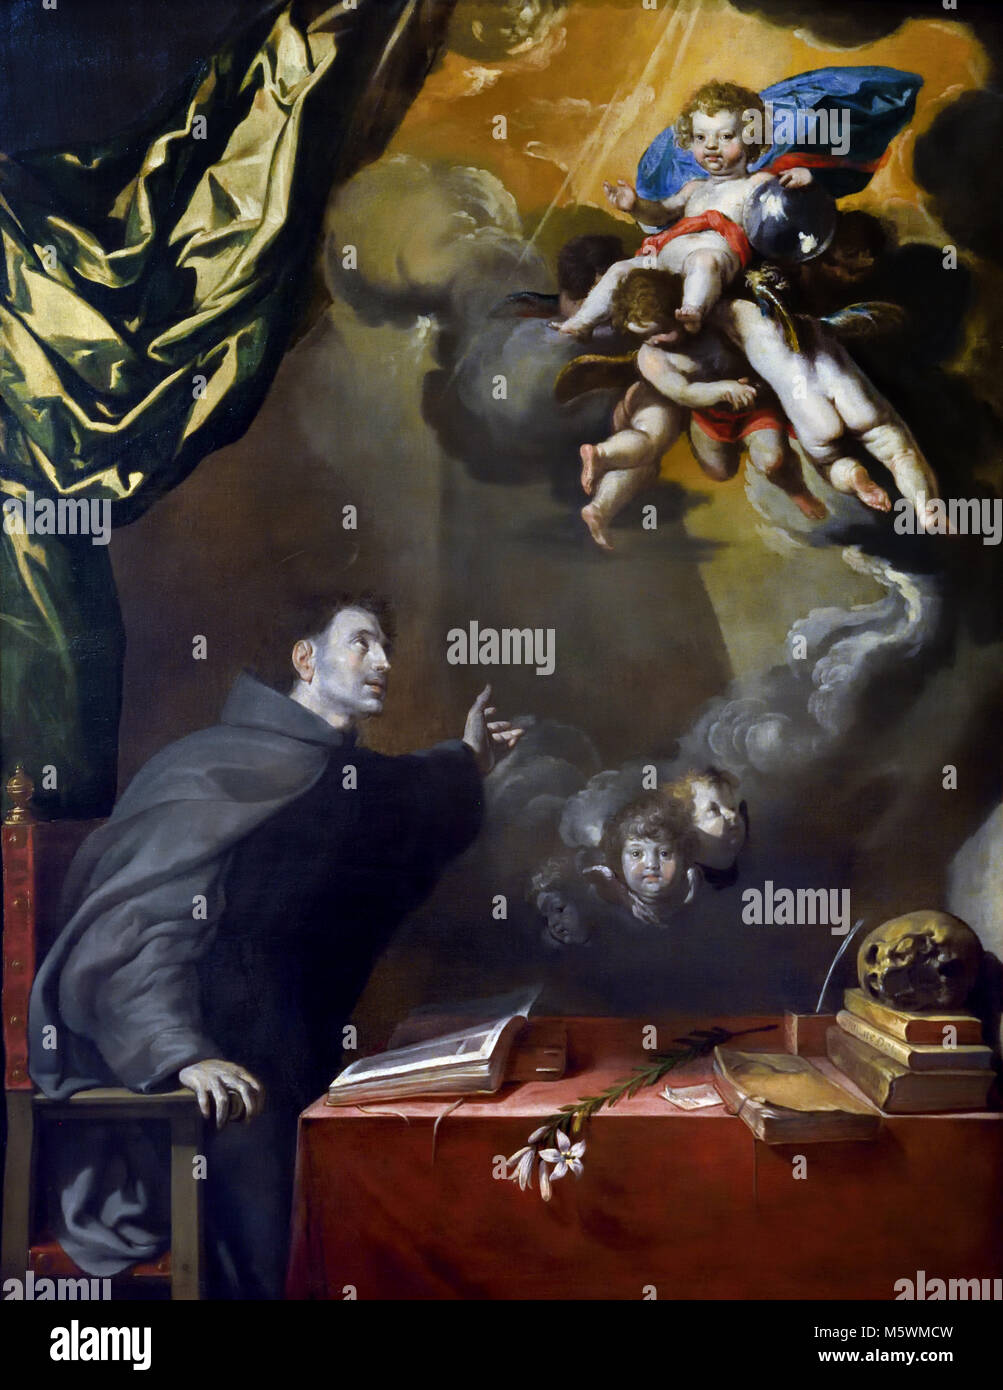 L'apparence de l'enfant à San Antonio 1650 Artiste Antonio del castillo y Saavedra (1616-1668) 17ème siècle, l'Espagne, l'espagnol, ( l'Enfant Jésus apparaissant à San Antonio de Padua. ) Banque D'Images